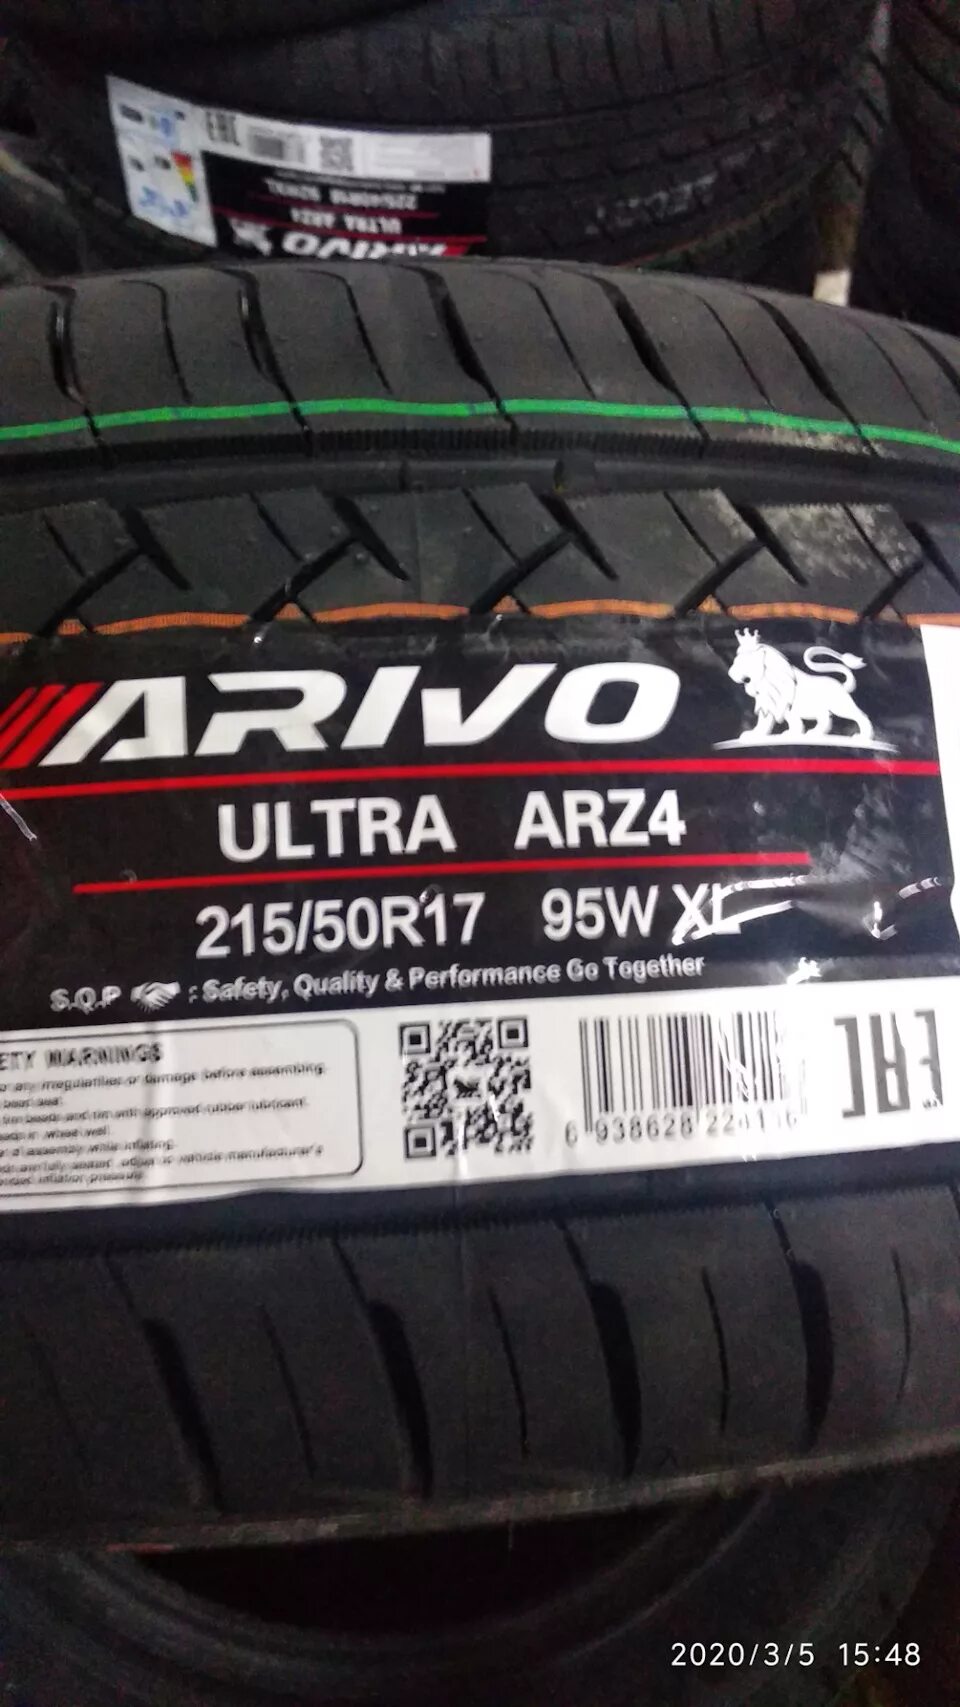 Ultra arz5 шины отзывы. Arivo Ultra arz4 225/55 r17. Arivo Ultra arz4 шина. Arivo Ultra arz4 215/50 r17. Шина arivo Ultra arz4 235/40 r18 95w XL.